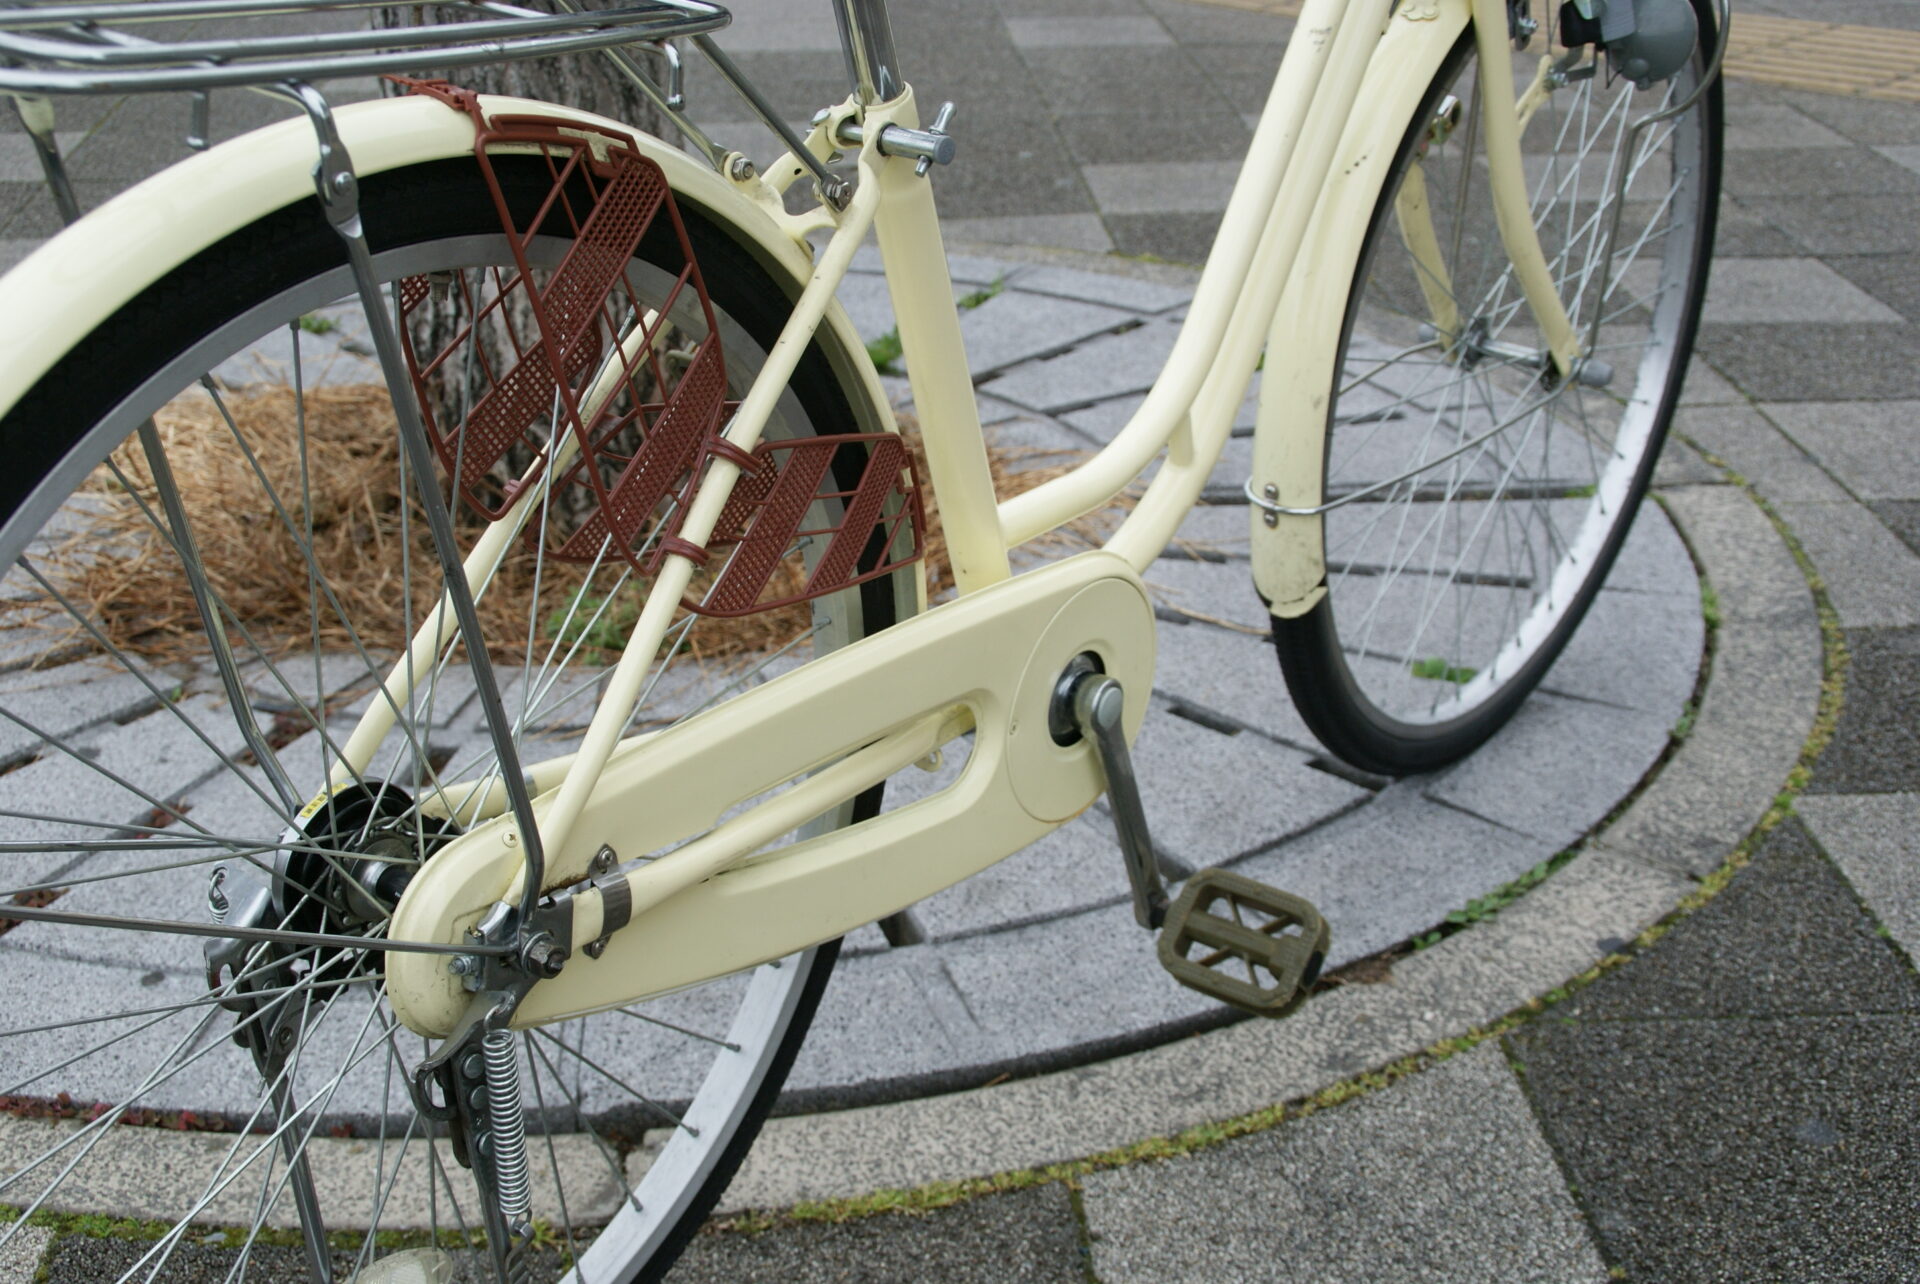 【お買い物にちょうどいい一台です】中古自転車のご紹介。 | 京都の中古自転車・新車販売 サイクルショップ エイリン